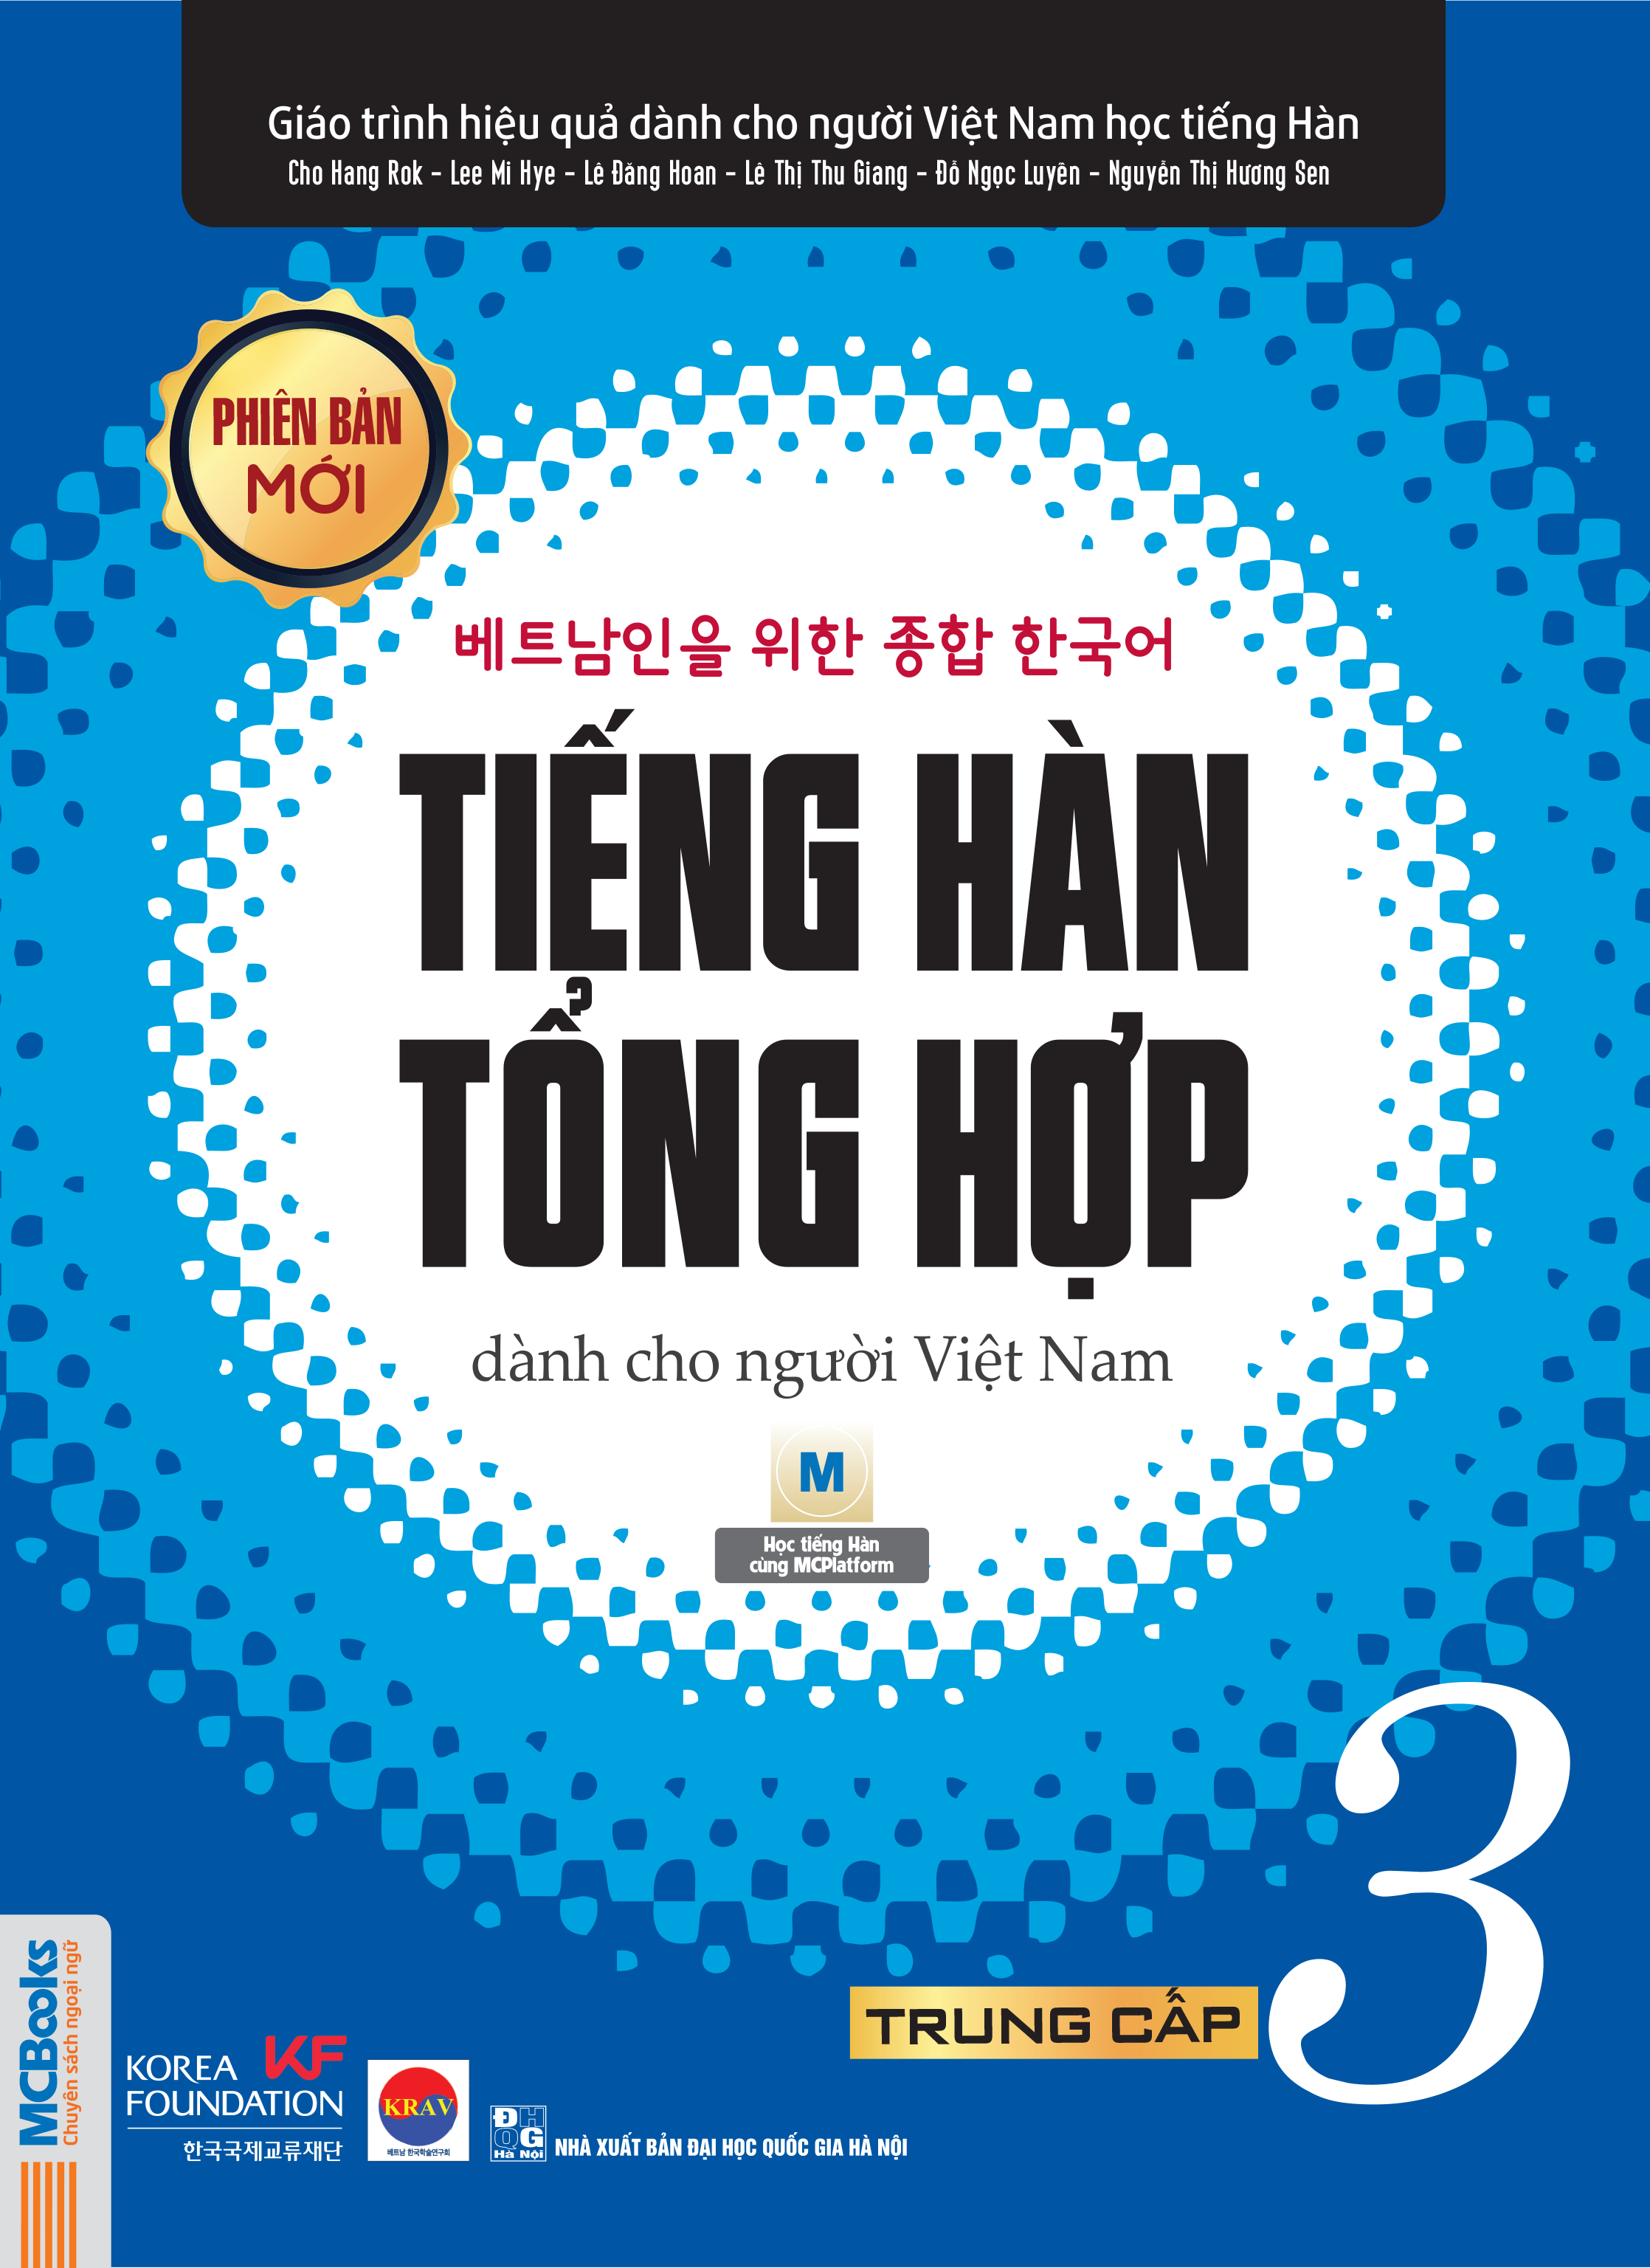 Bìa trước Giáo trình tiếng Hàn tổng hợp dành cho người Việt Nam trung cấp 3 bản đen trắng